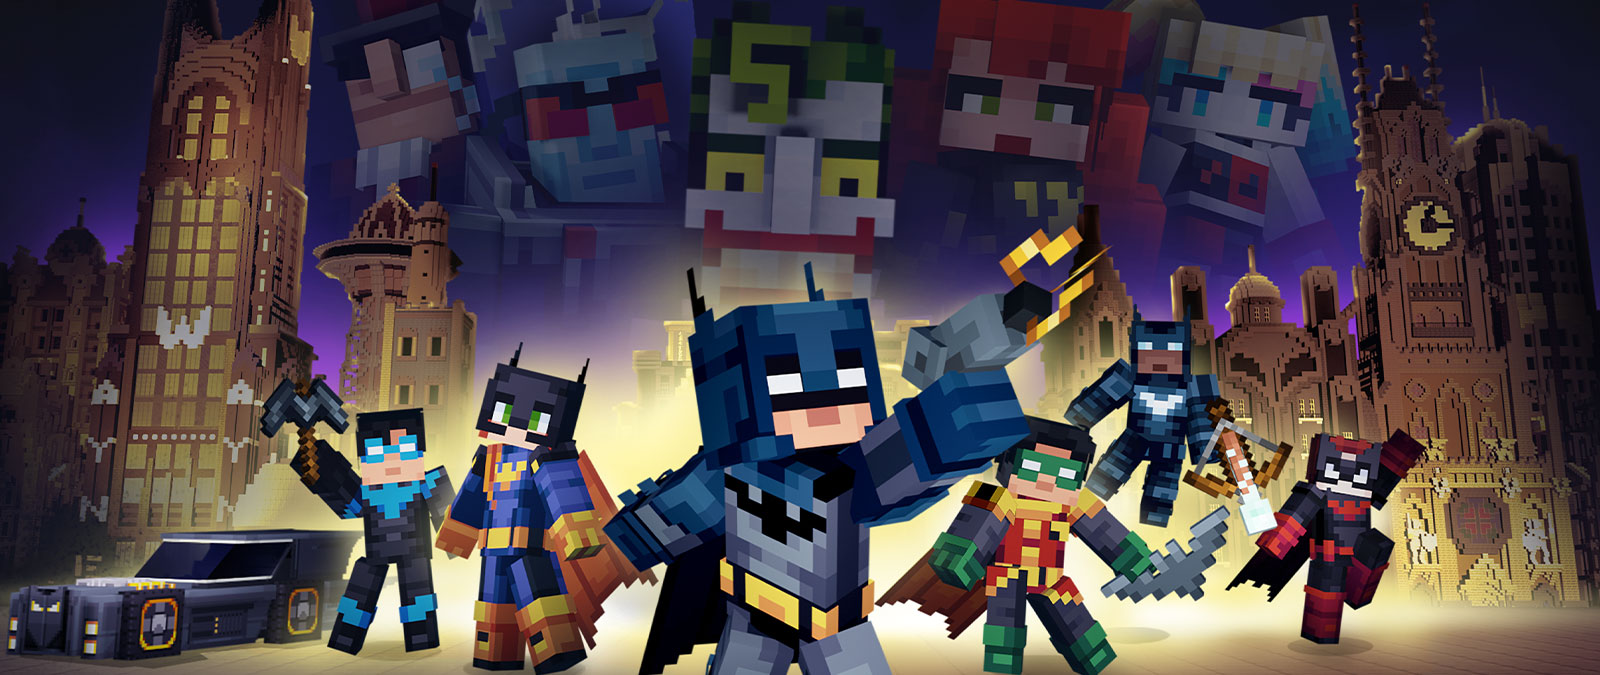 Batman und die Bat-Familie posieren zusammen mit Schurk*innen mit Blick auf eine Minecraft Gotham City.